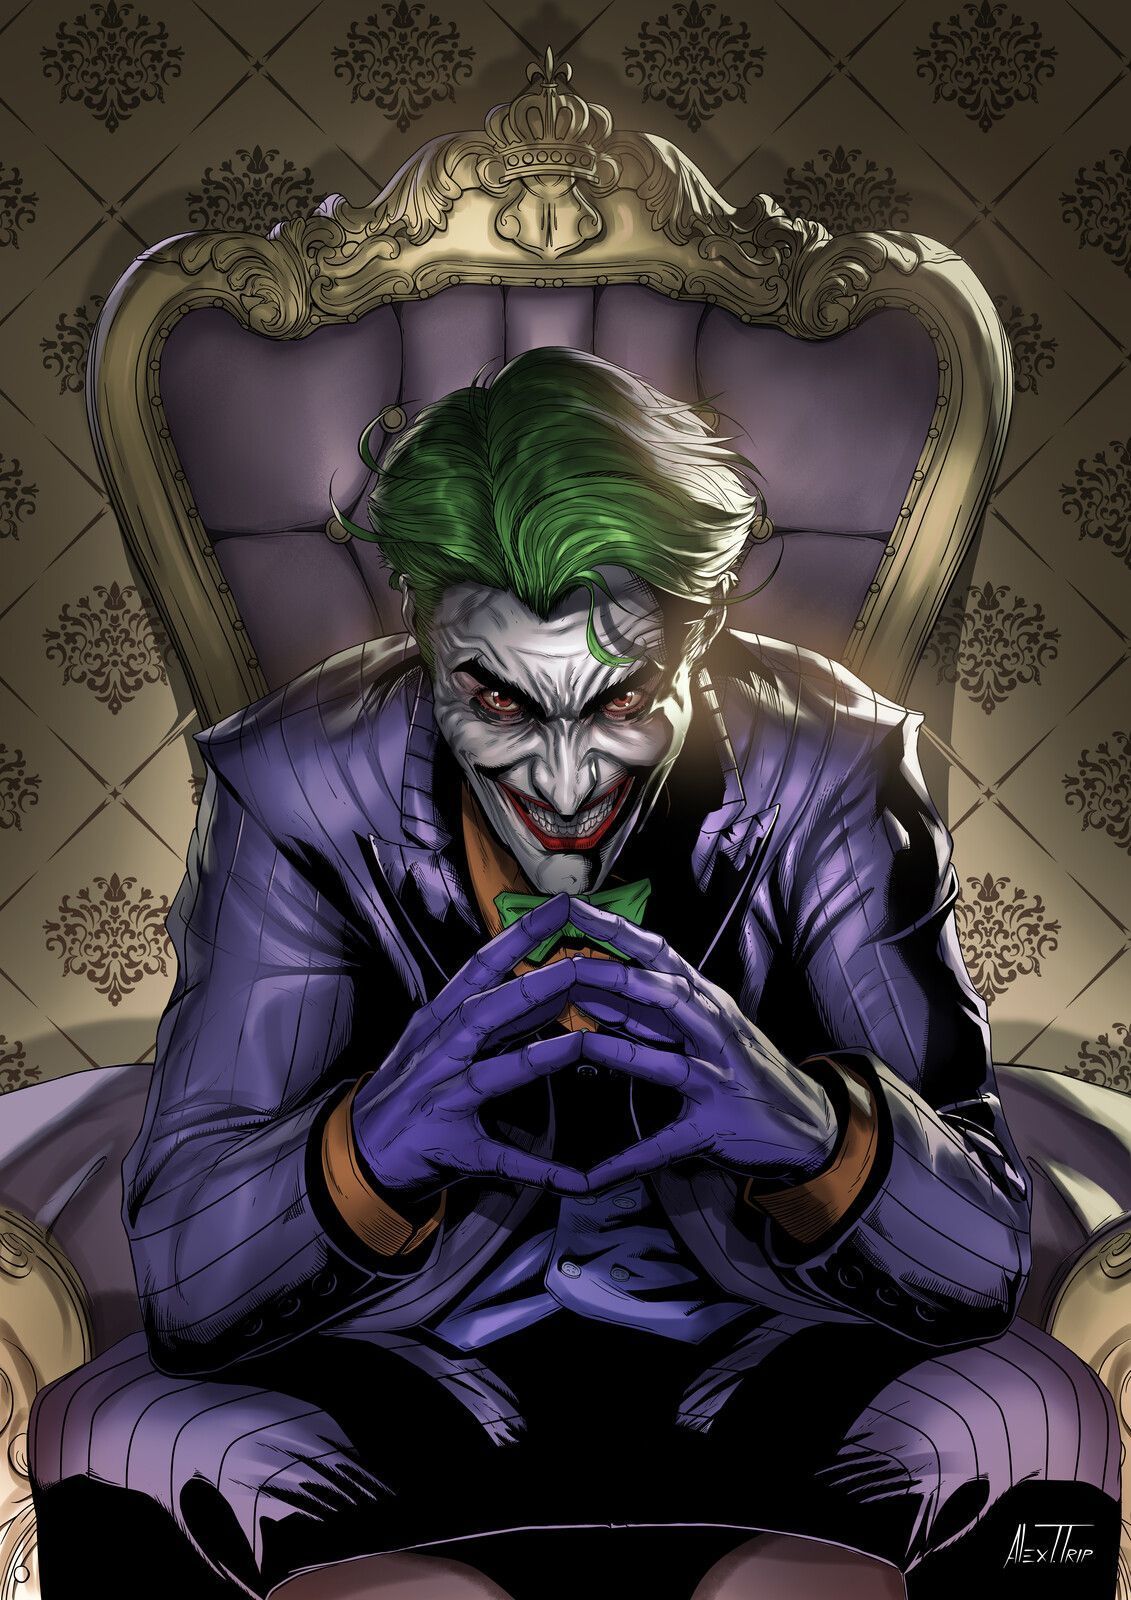 Joker Clown Prinz des Verbrechens, Alex Trpcevski. Joker clown, Joker drawings, Joker artwork